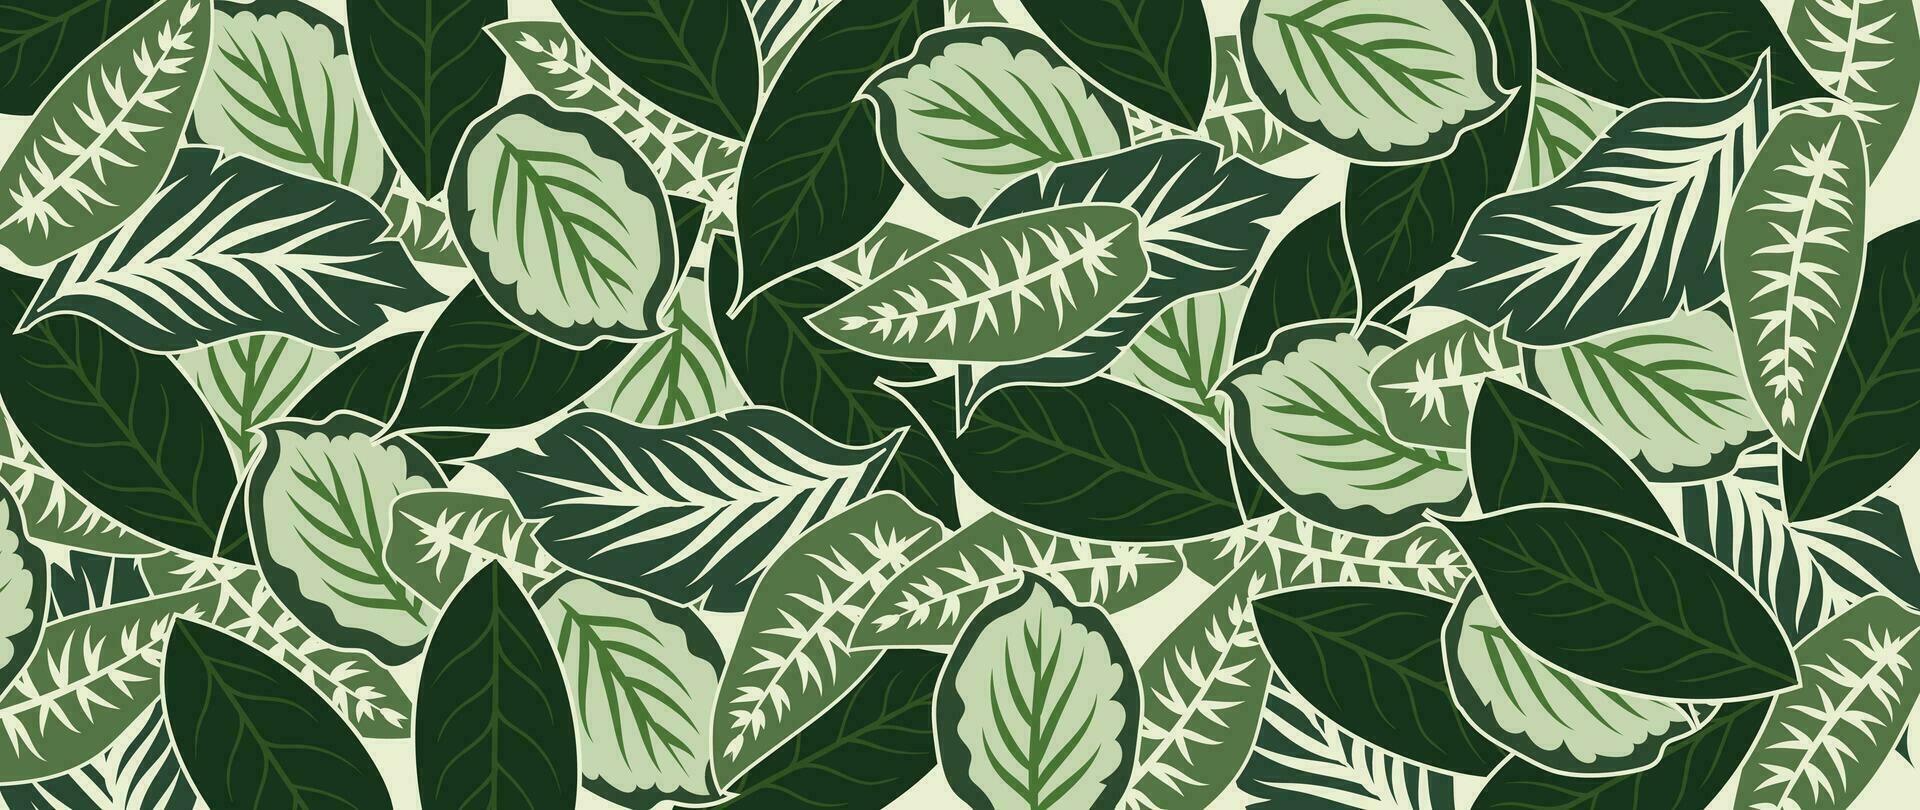 abstrato folhagem botânico fundo vetor. verde aguarela papel de parede do tropical plantas, folhas, folha galhos. folhagem Projeto para bandeira, impressões, decoração, parede arte, decoração, tecido. vetor